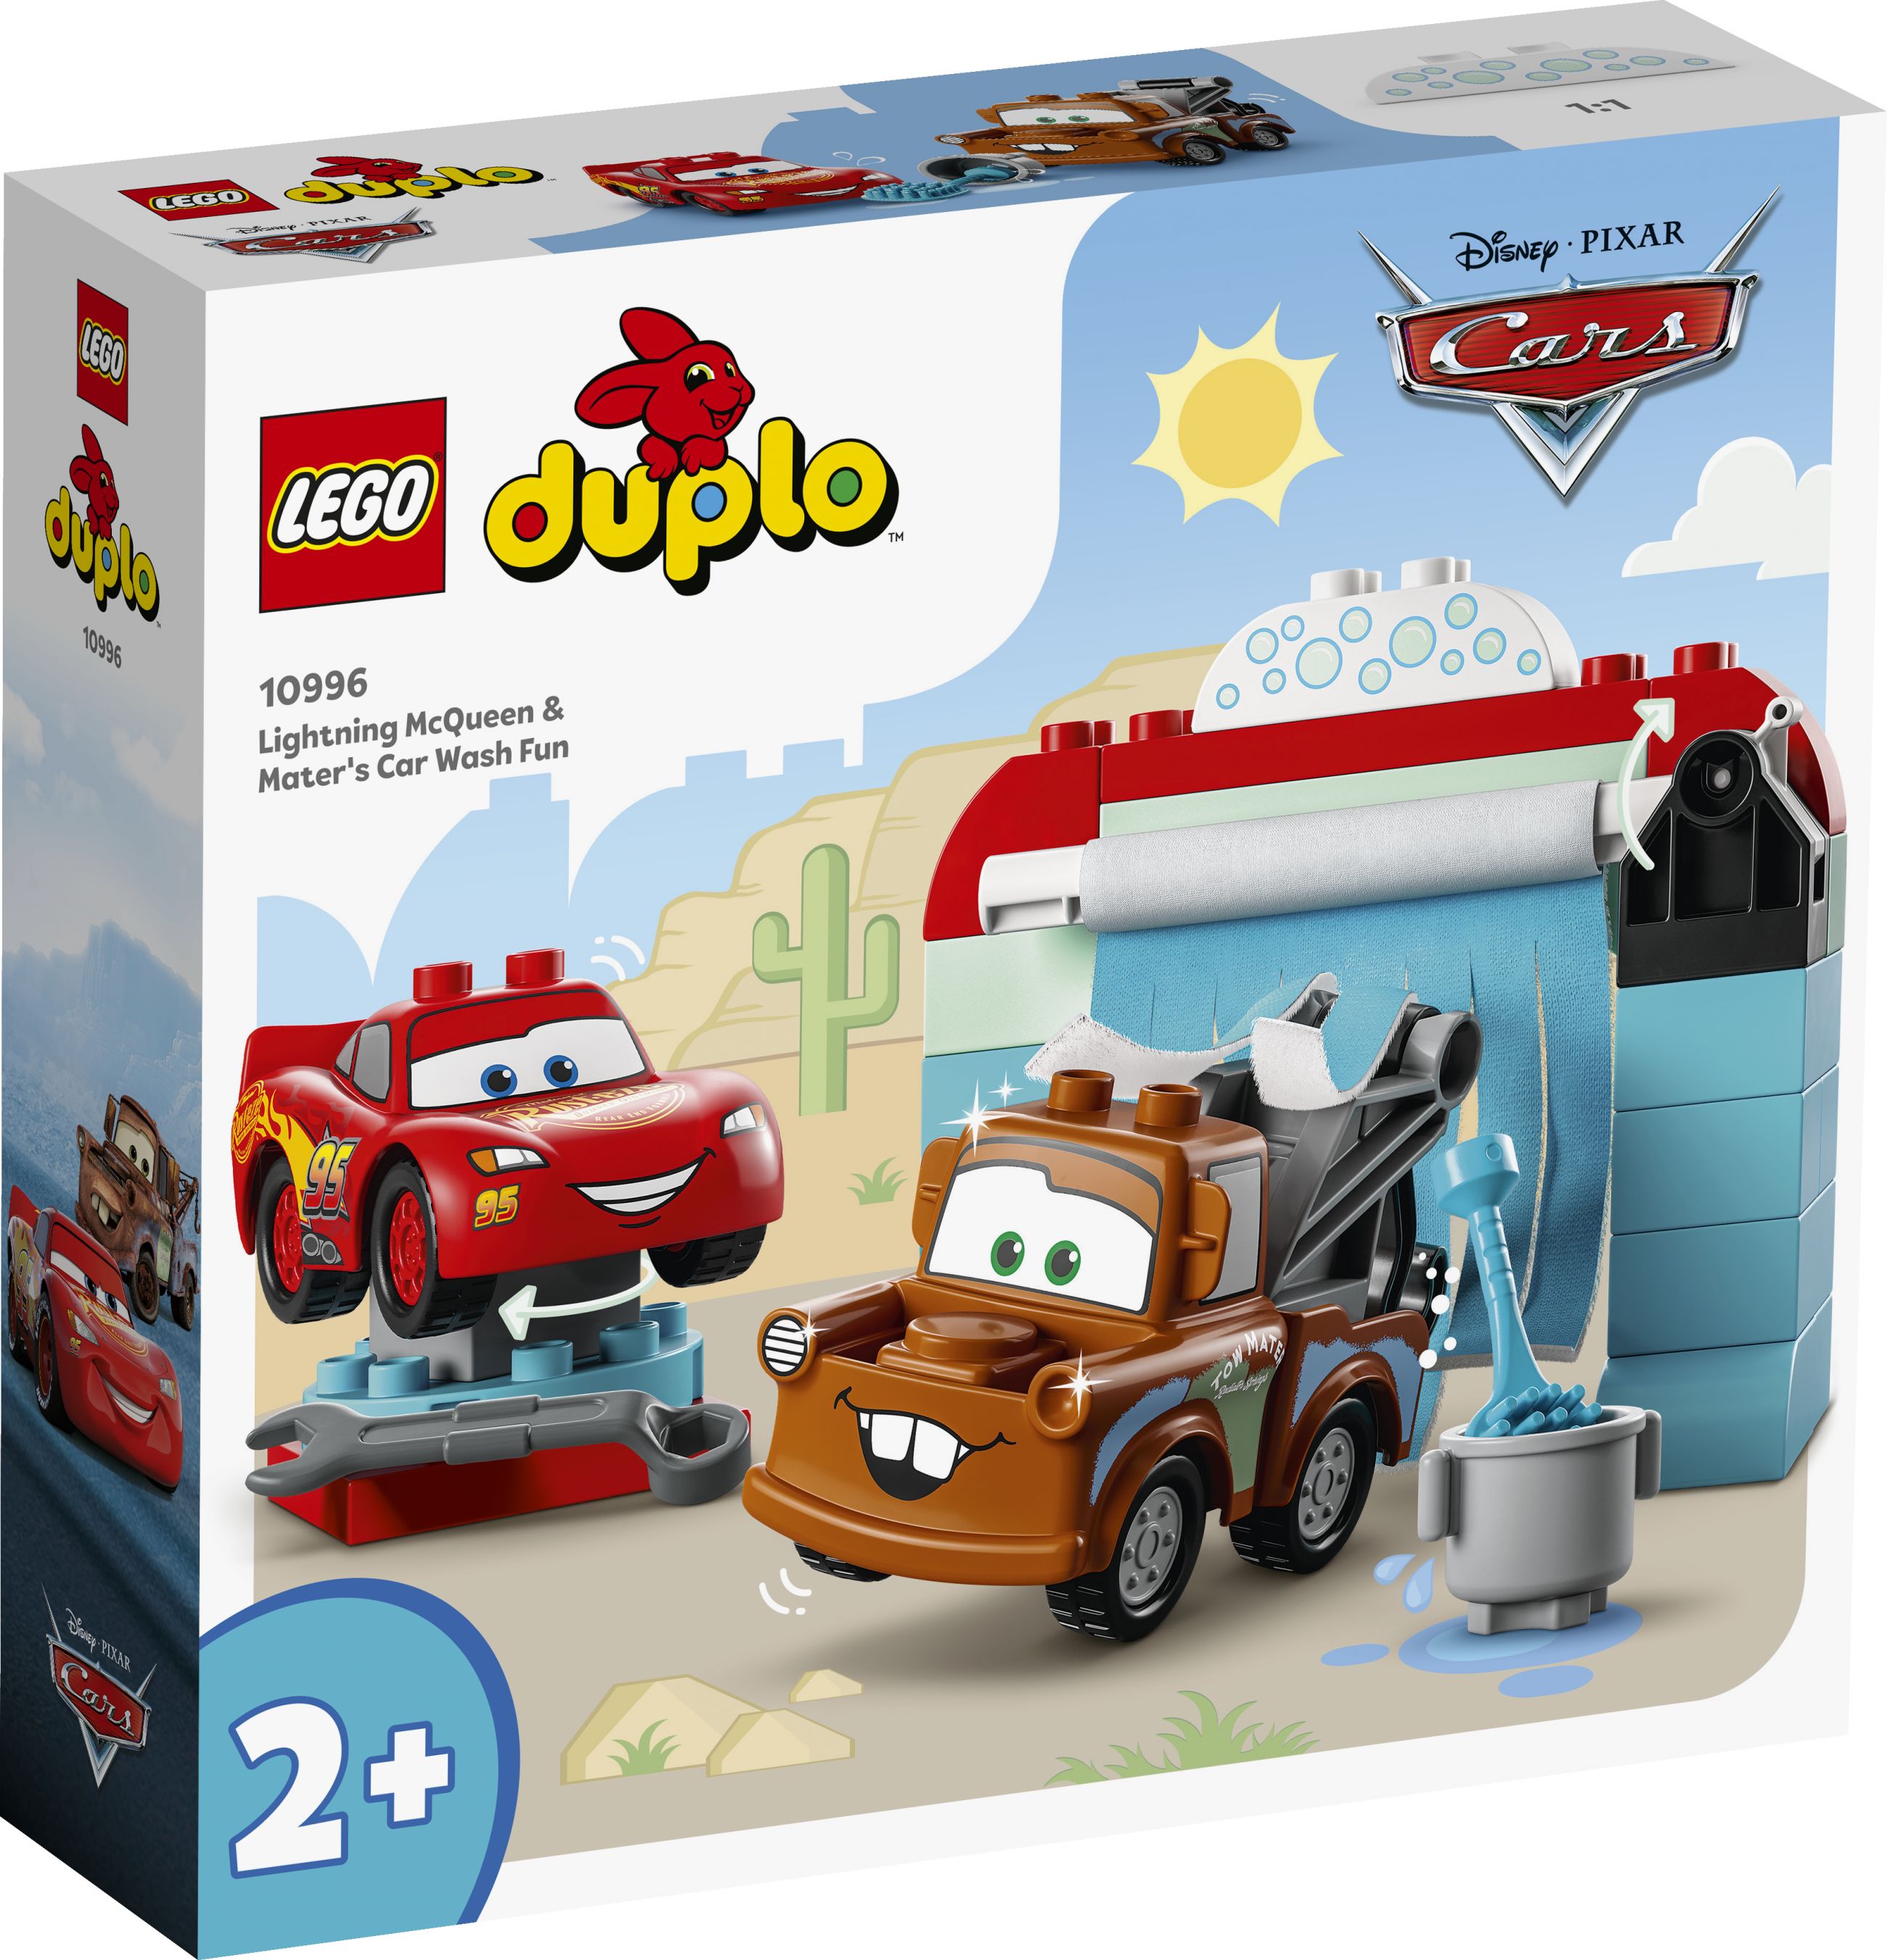 LEGO Duplo 10996 Lightning McQueen und Mater in der Waschanlage LEGO_10996_Box1_v29.jpg